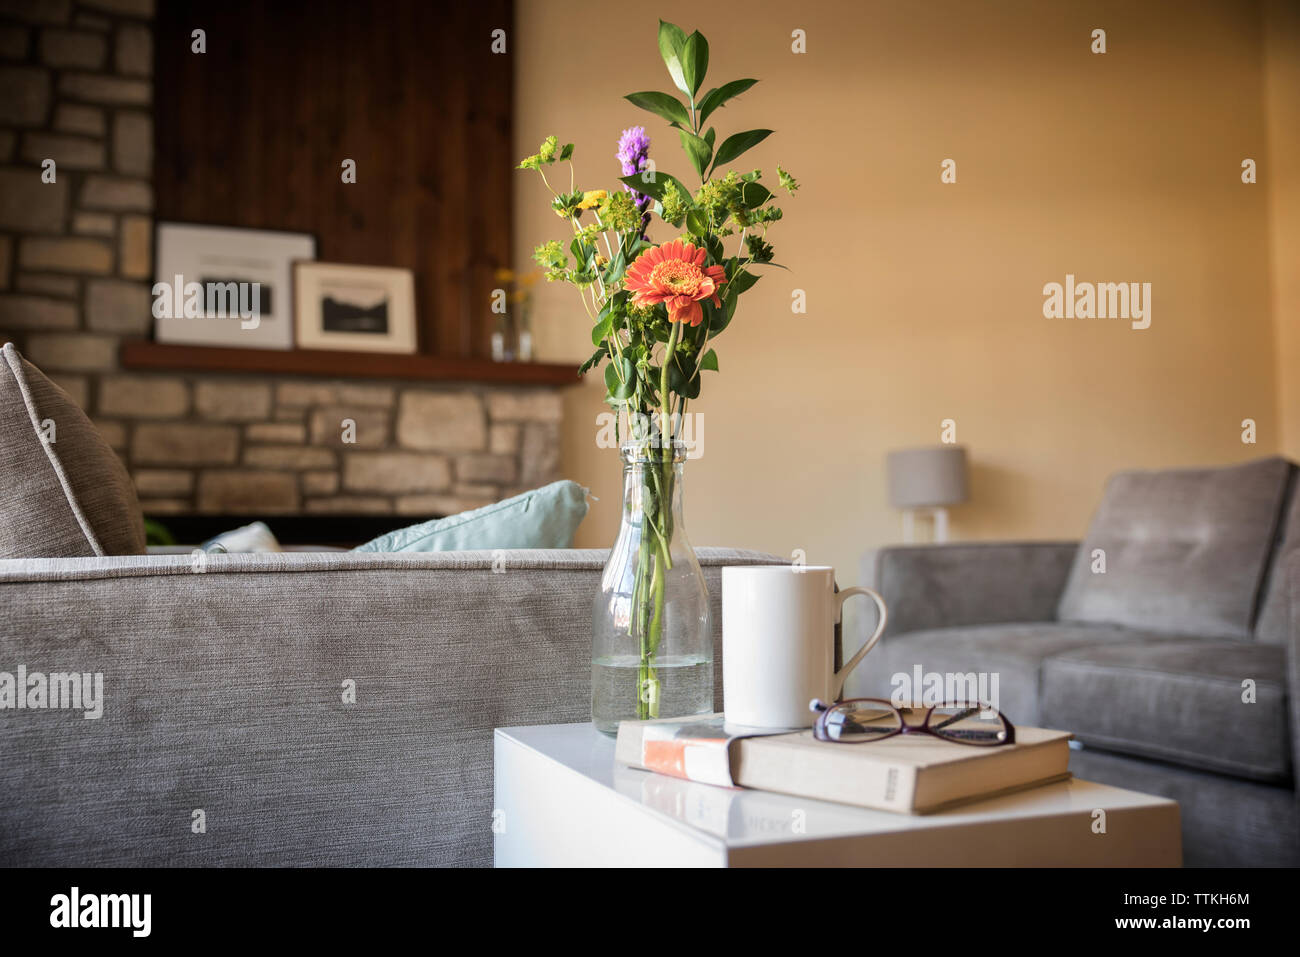 Flower vase on side table in living room Stock Photo